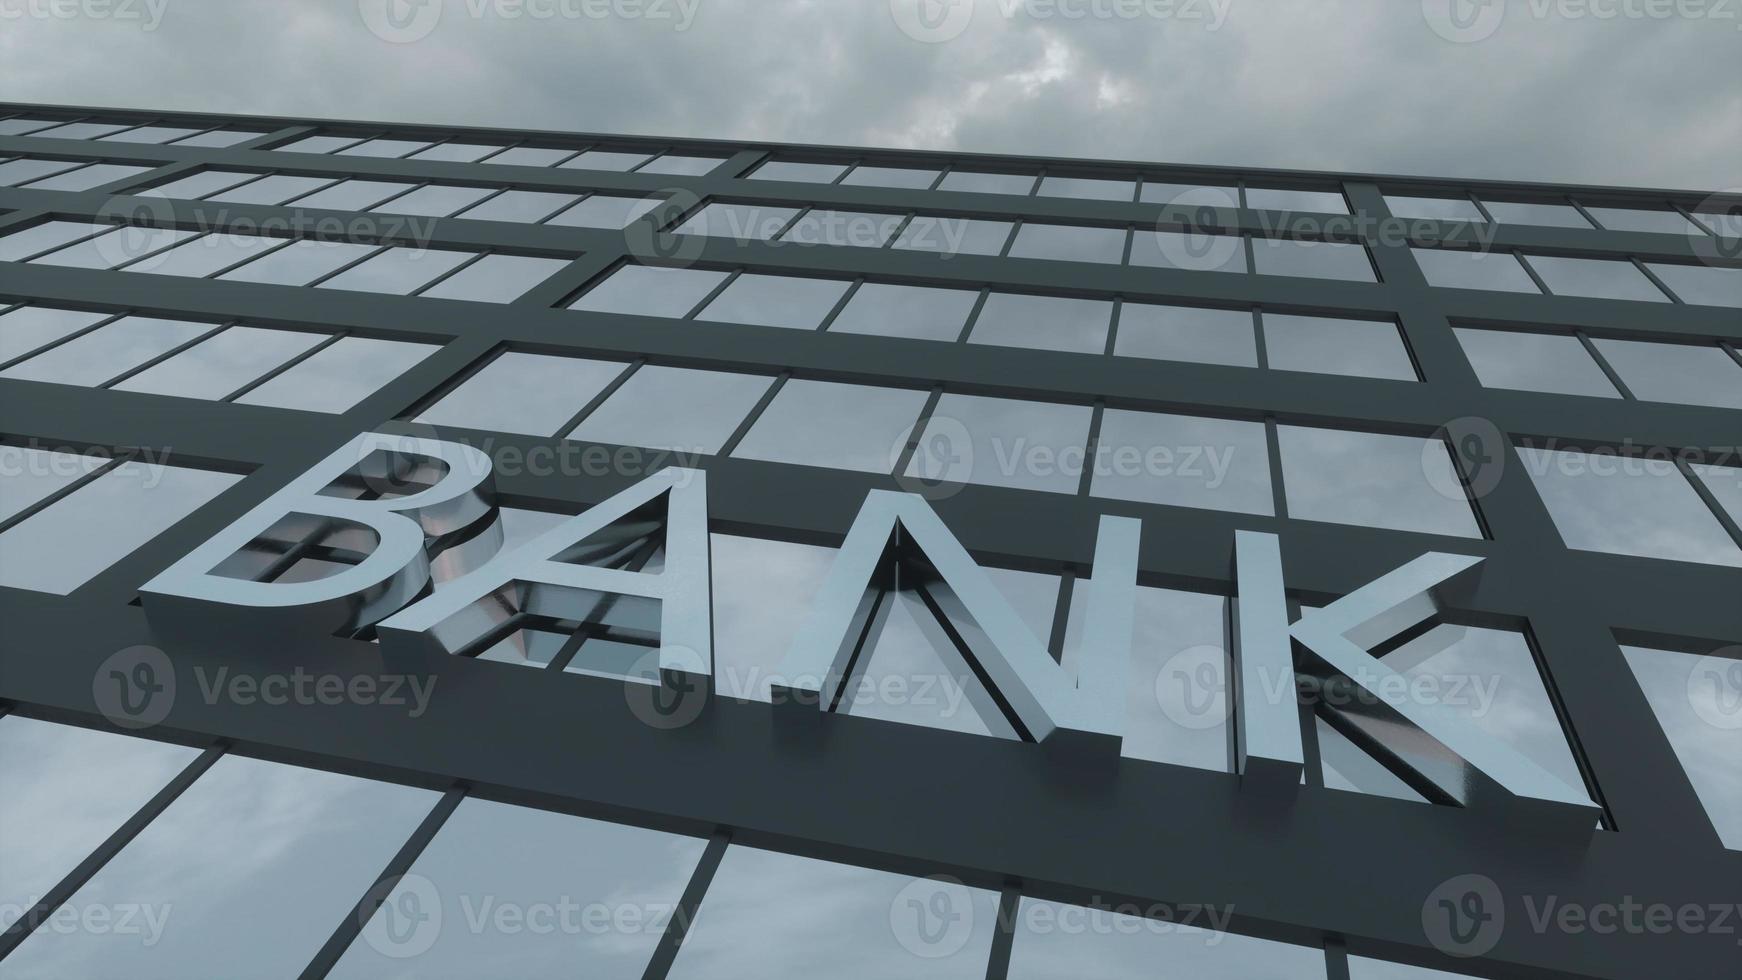 signo de banco en un moderno rascacielos de cristal. cielo reflejado y ciudad en fachada moderna. concepto de negocios y finanzas. ilustración 3d foto